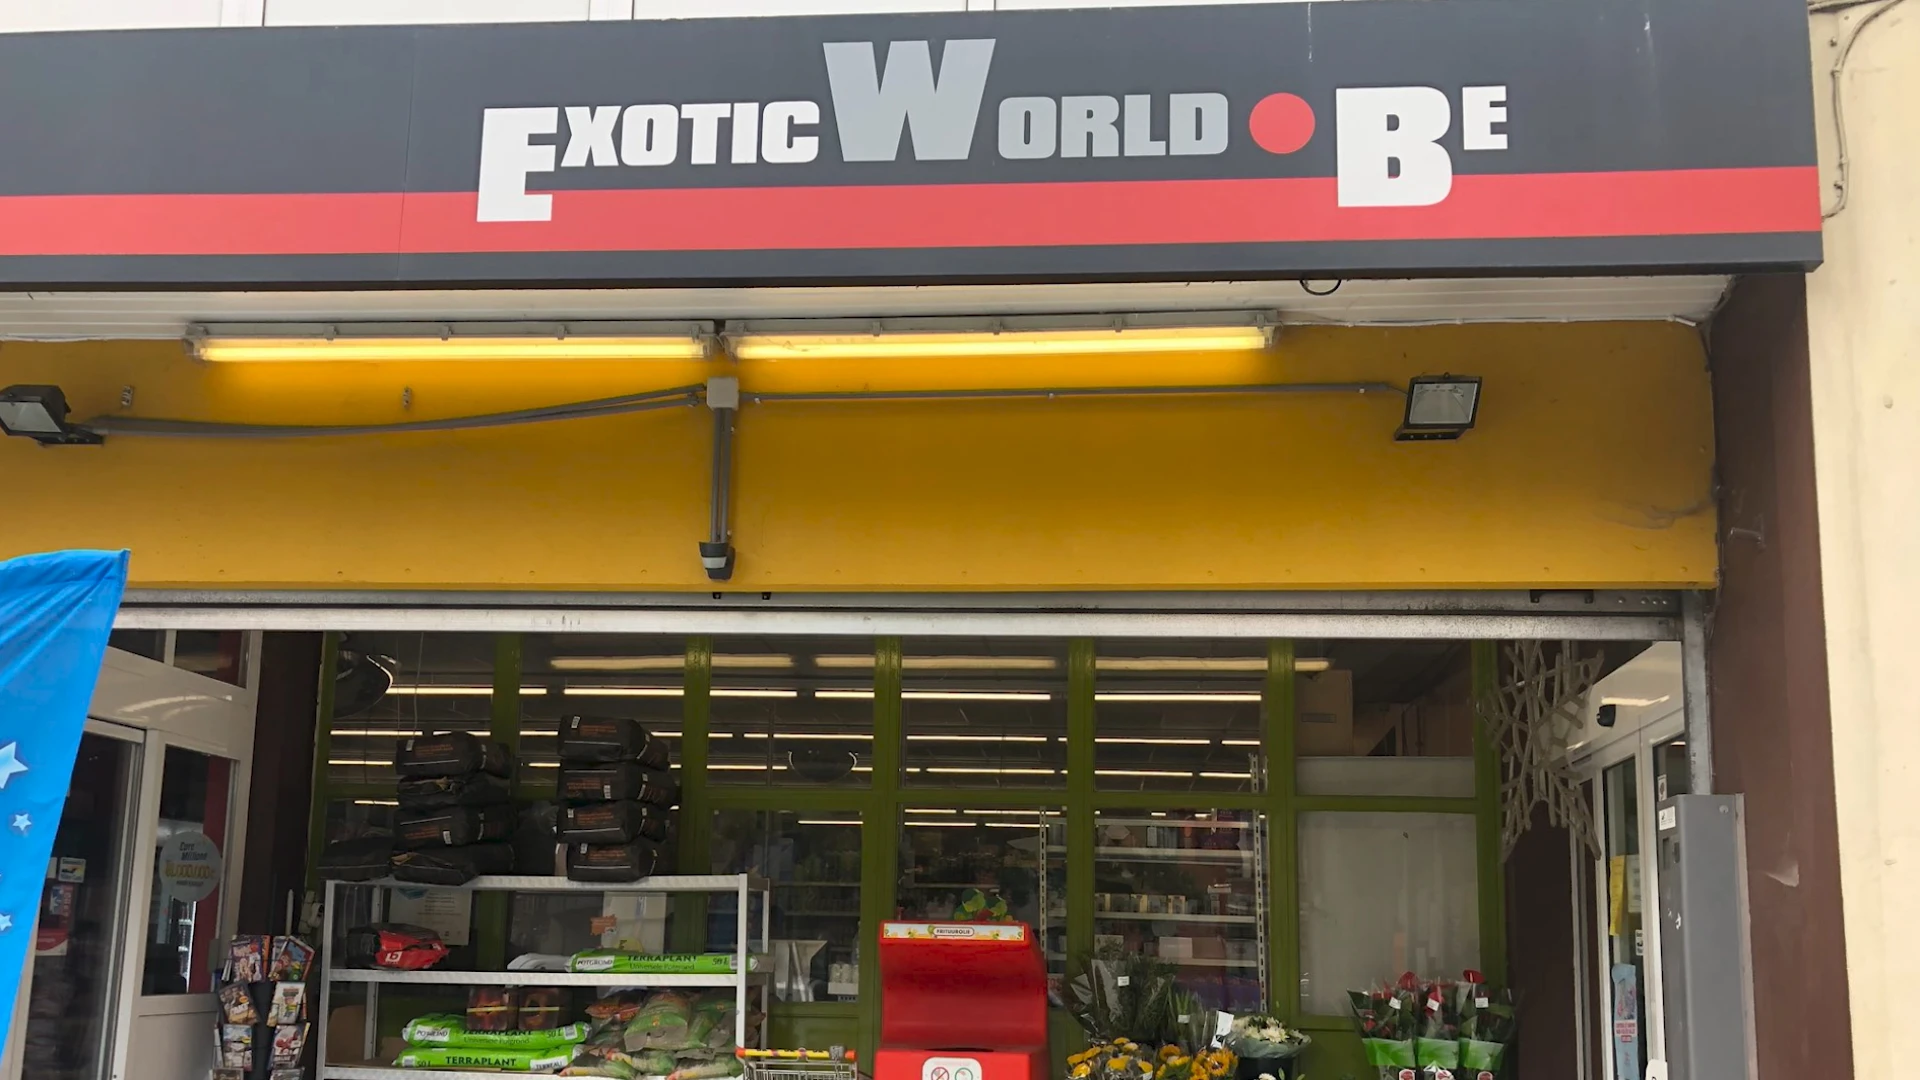 Eigenaar supermarkt Exotic World in Leuven bedreigd met mes na diefstal